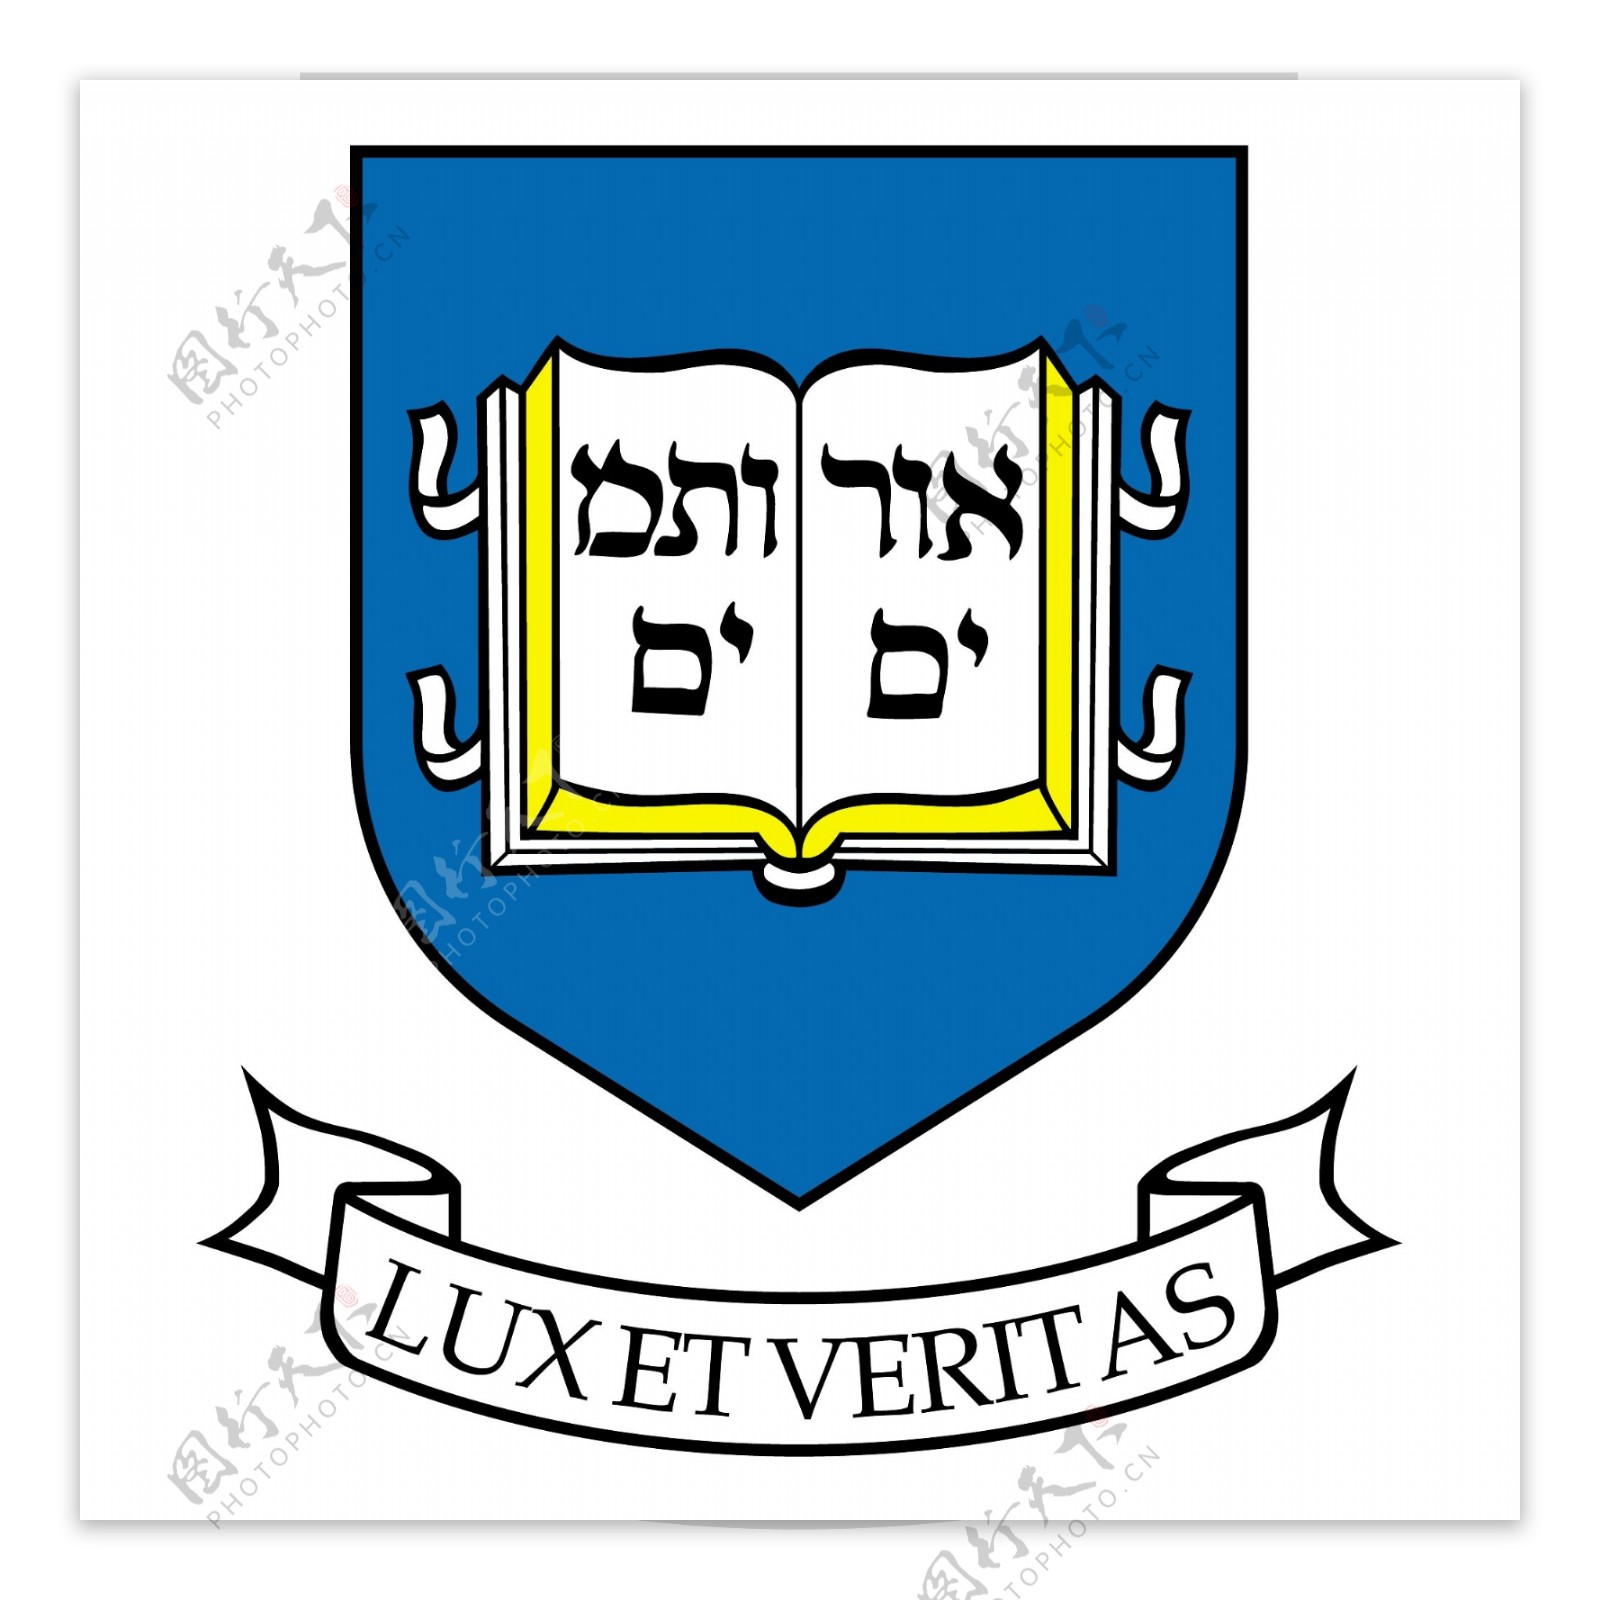 耶鲁大学校徽图片